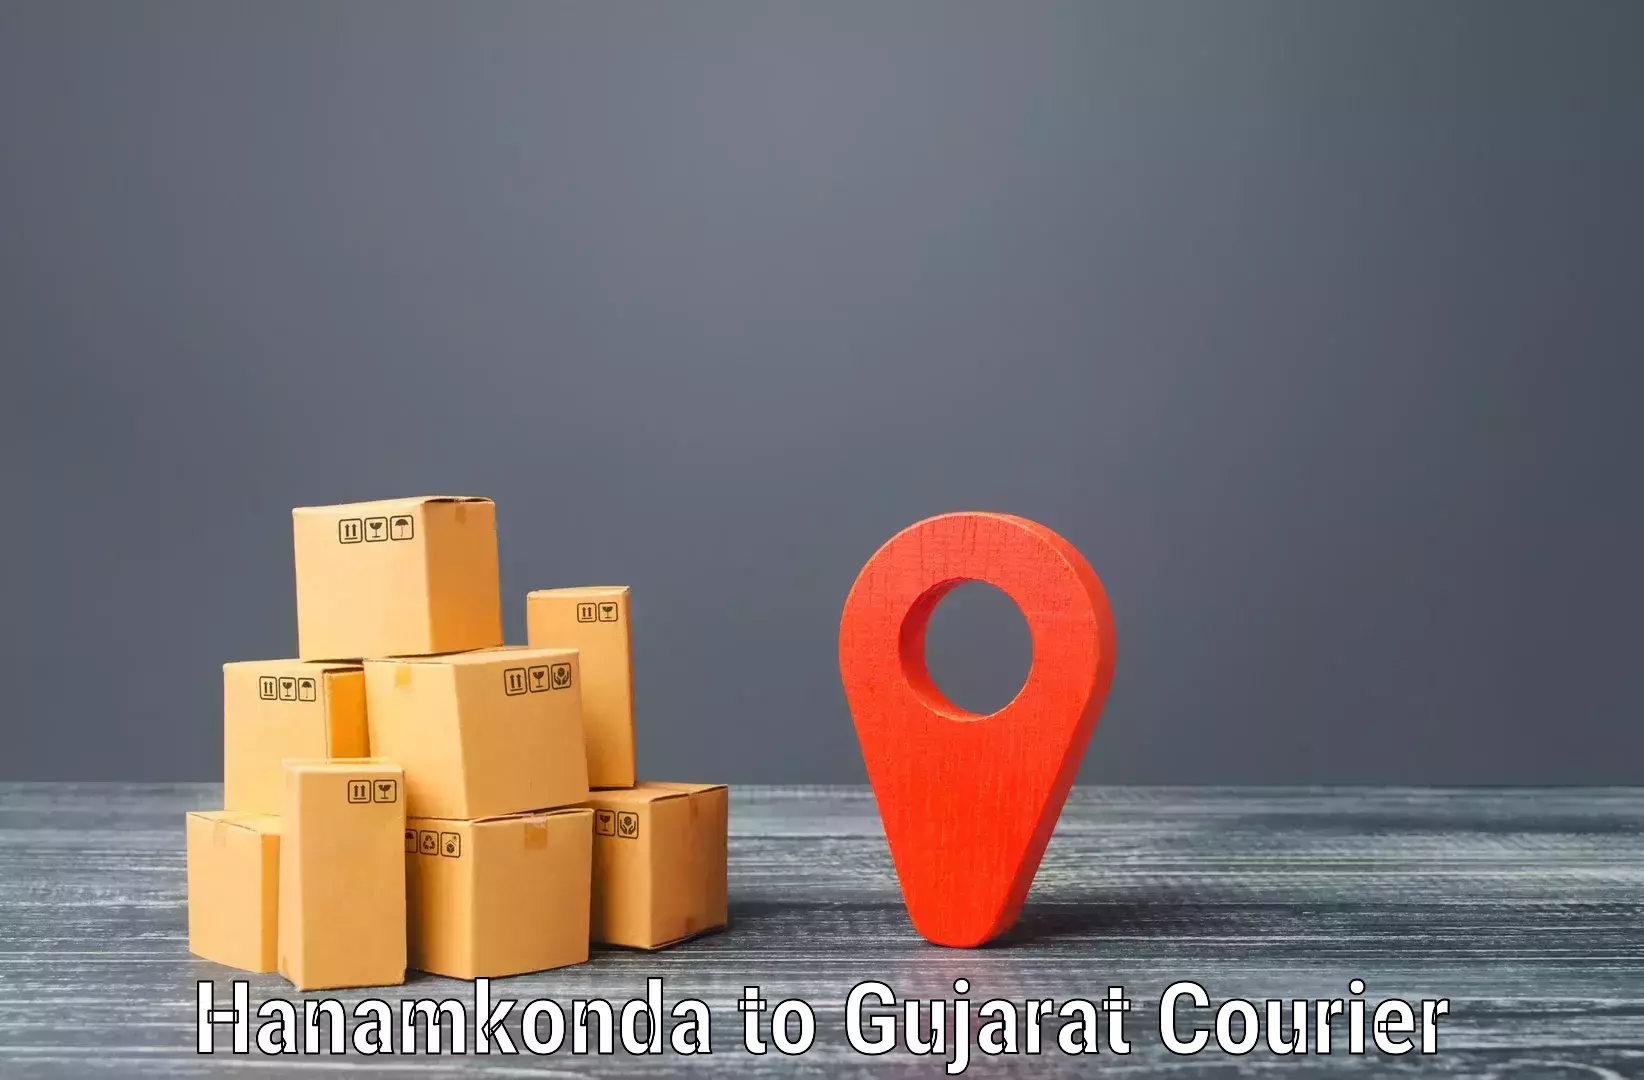 Flexible shipping options Hanamkonda to IIIT Surat